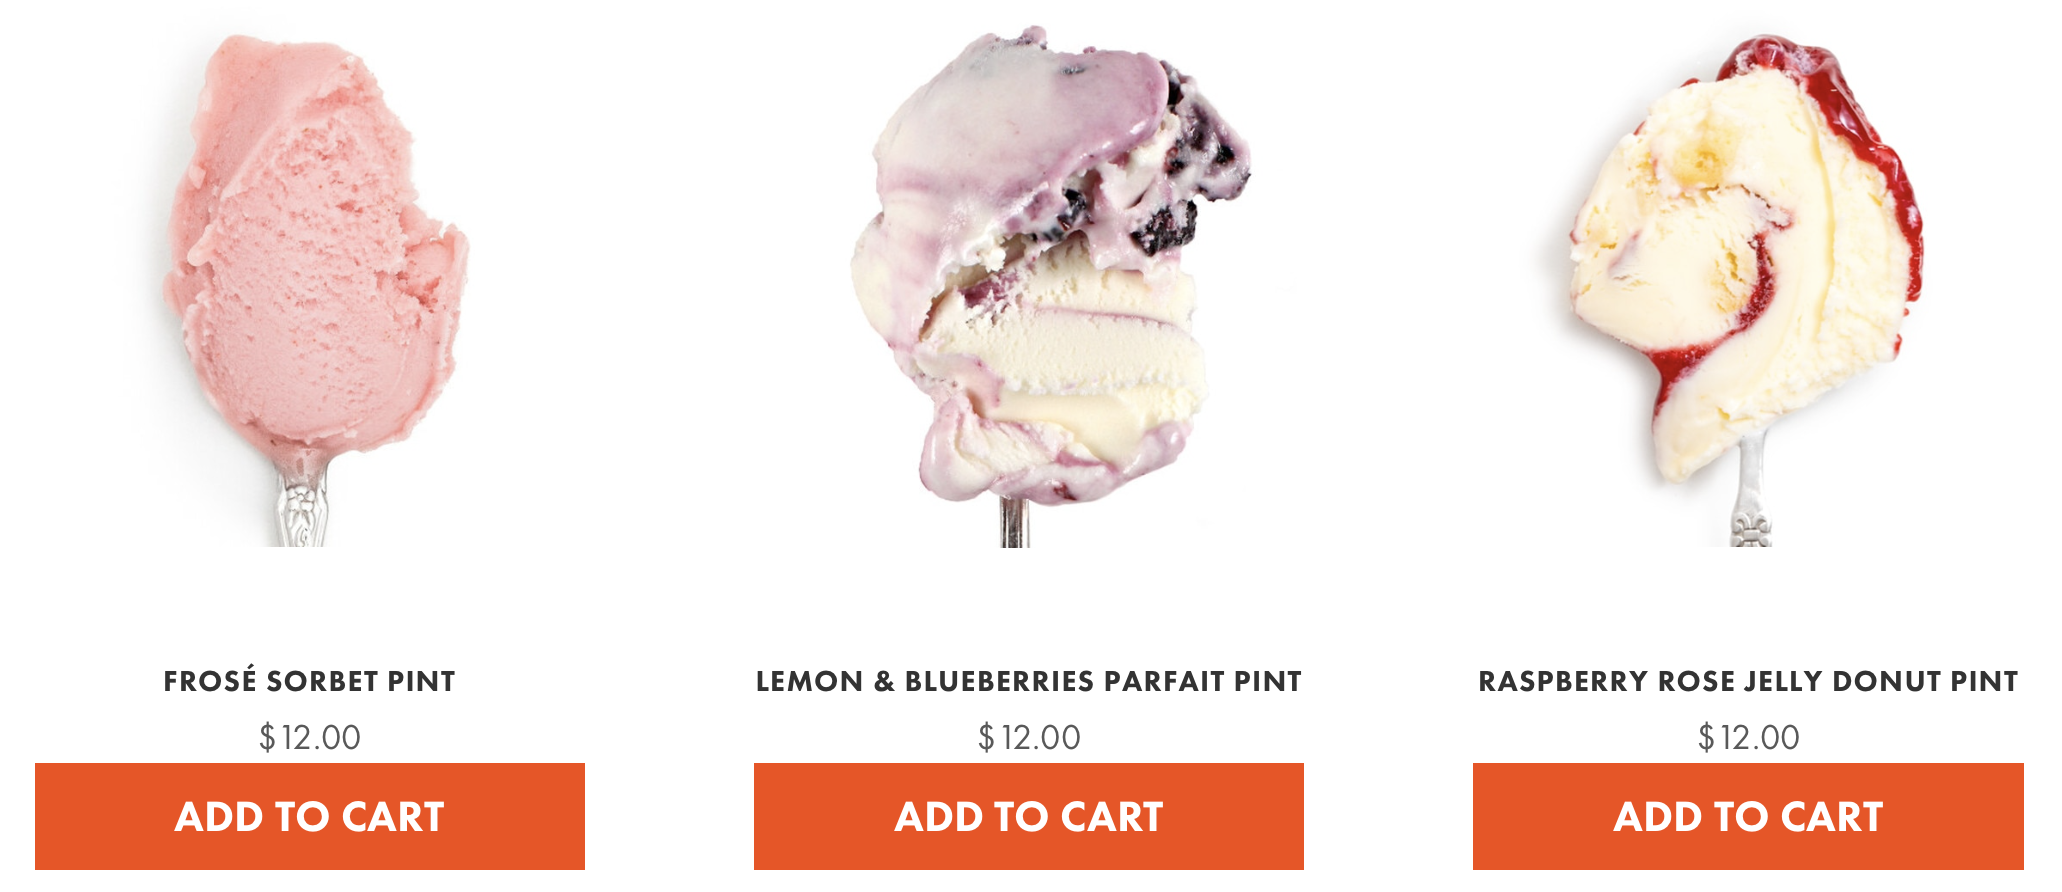 jeni's ice cream adventurous flavors